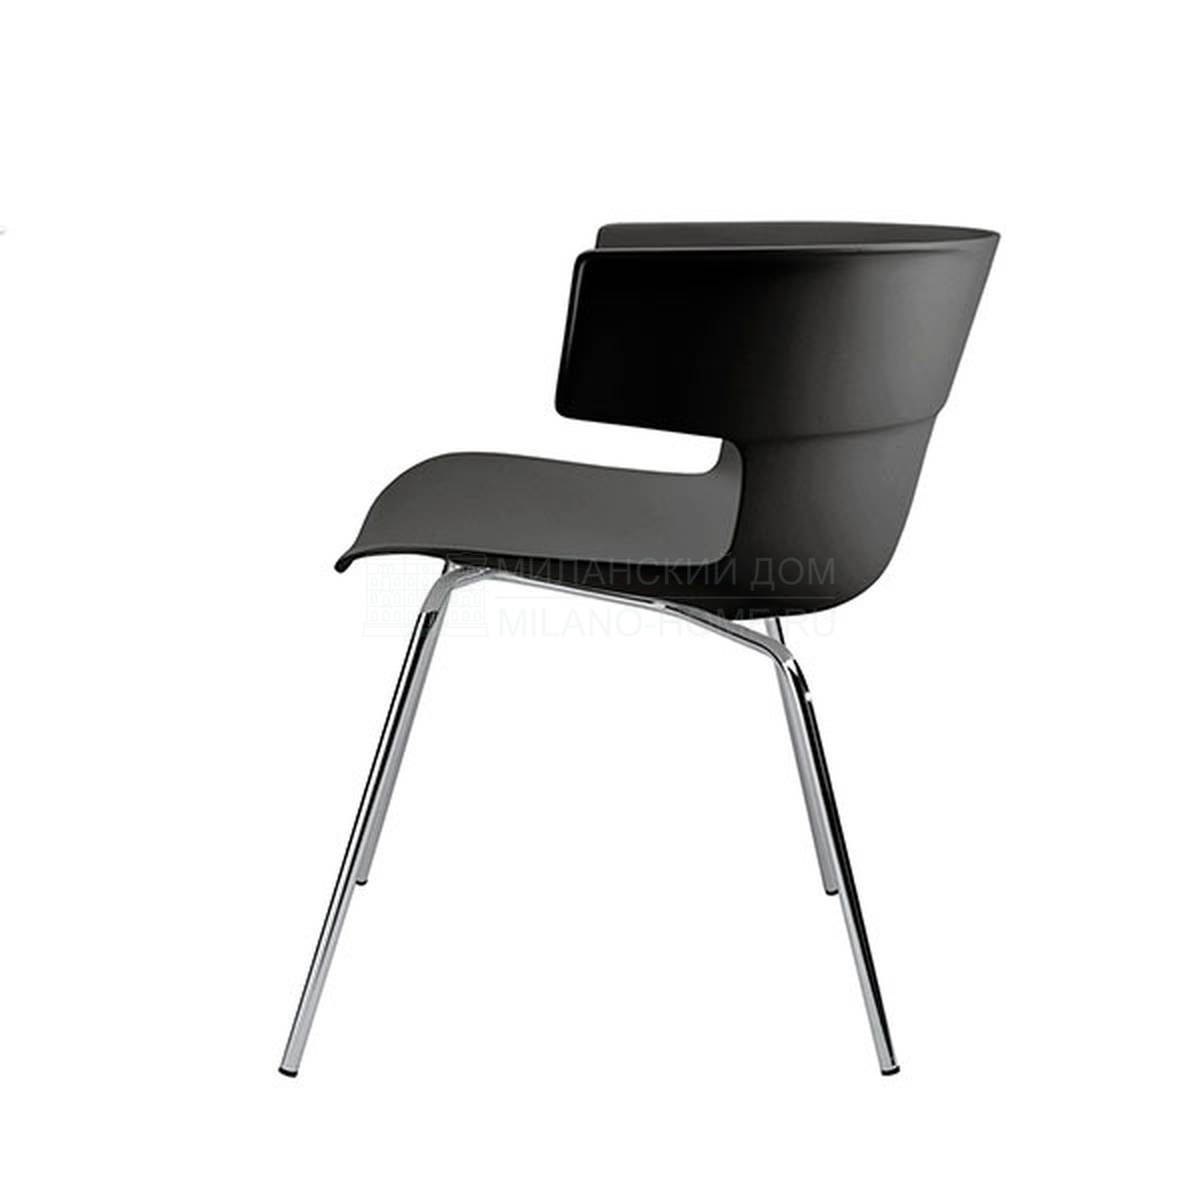 Металлический / Пластиковый стул Flo-FX из Италии фабрики SAWAYA & MORONI